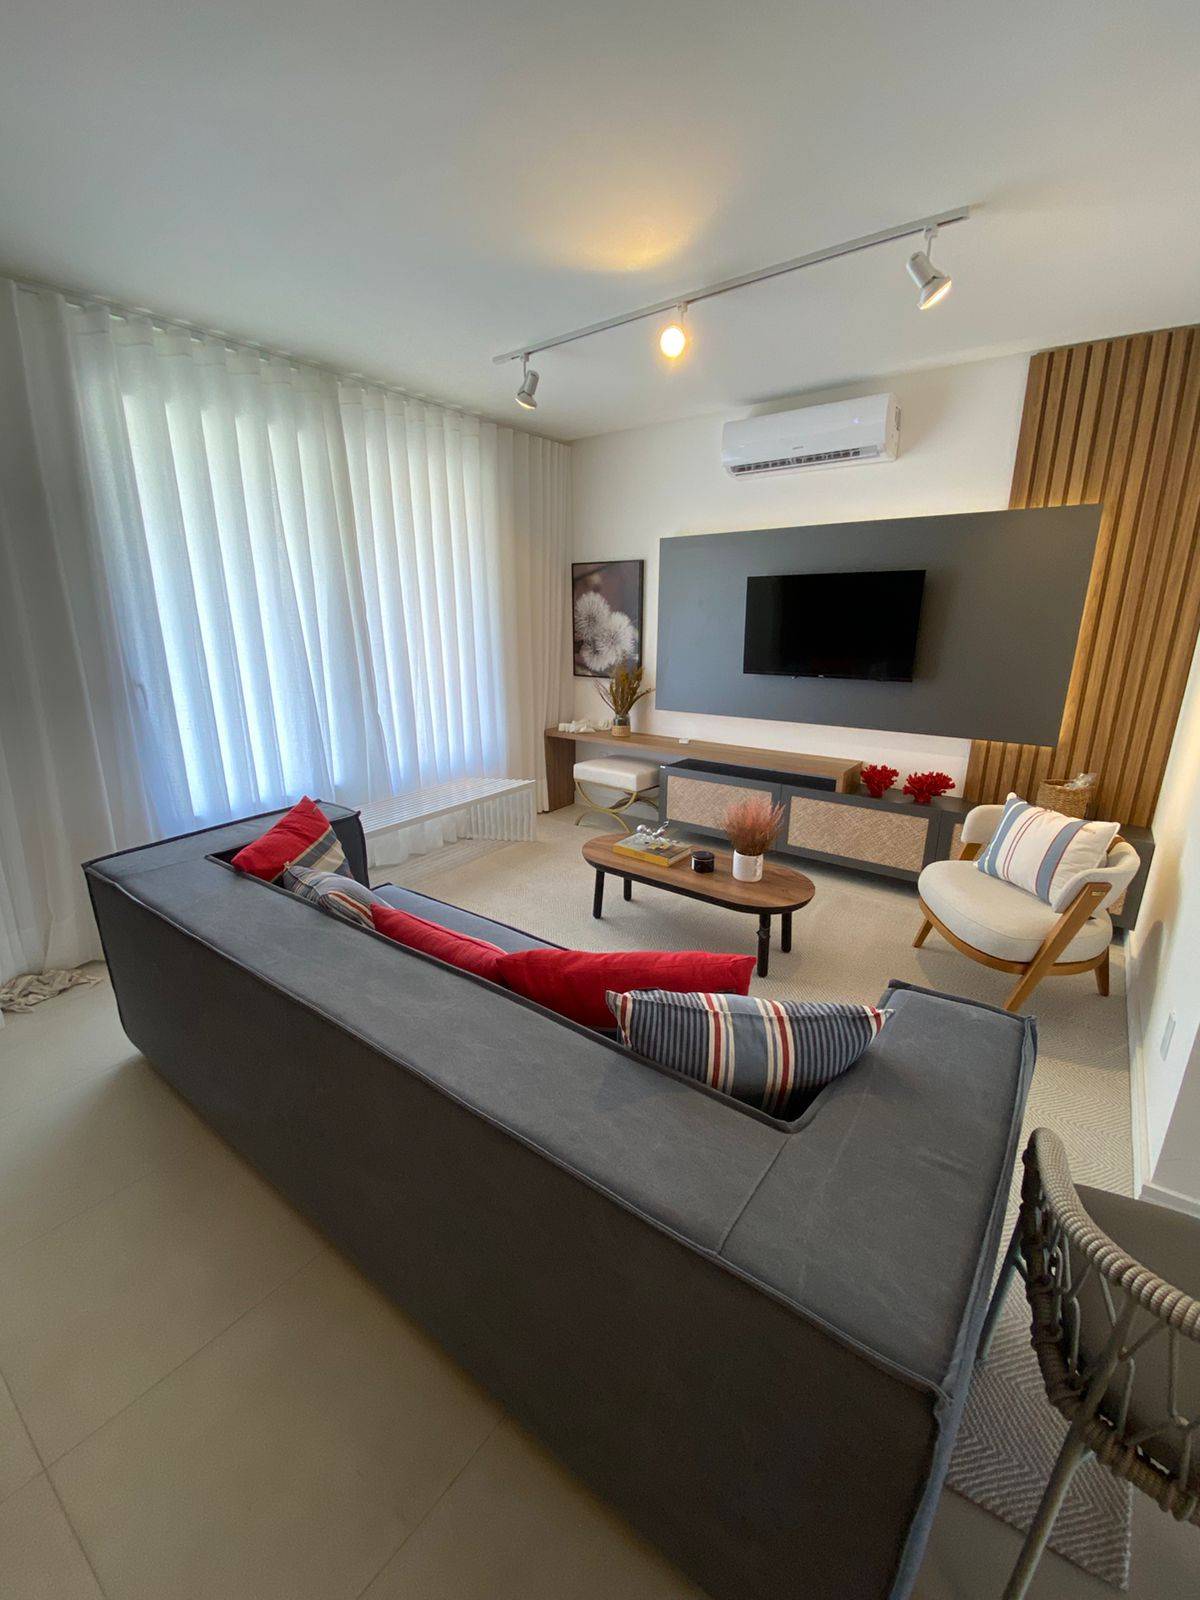 Casa em Condomínio 4 dormitórios para venda, Condomínio Murano - Zona Nova em Capão da Canoa | Ref.: 4968